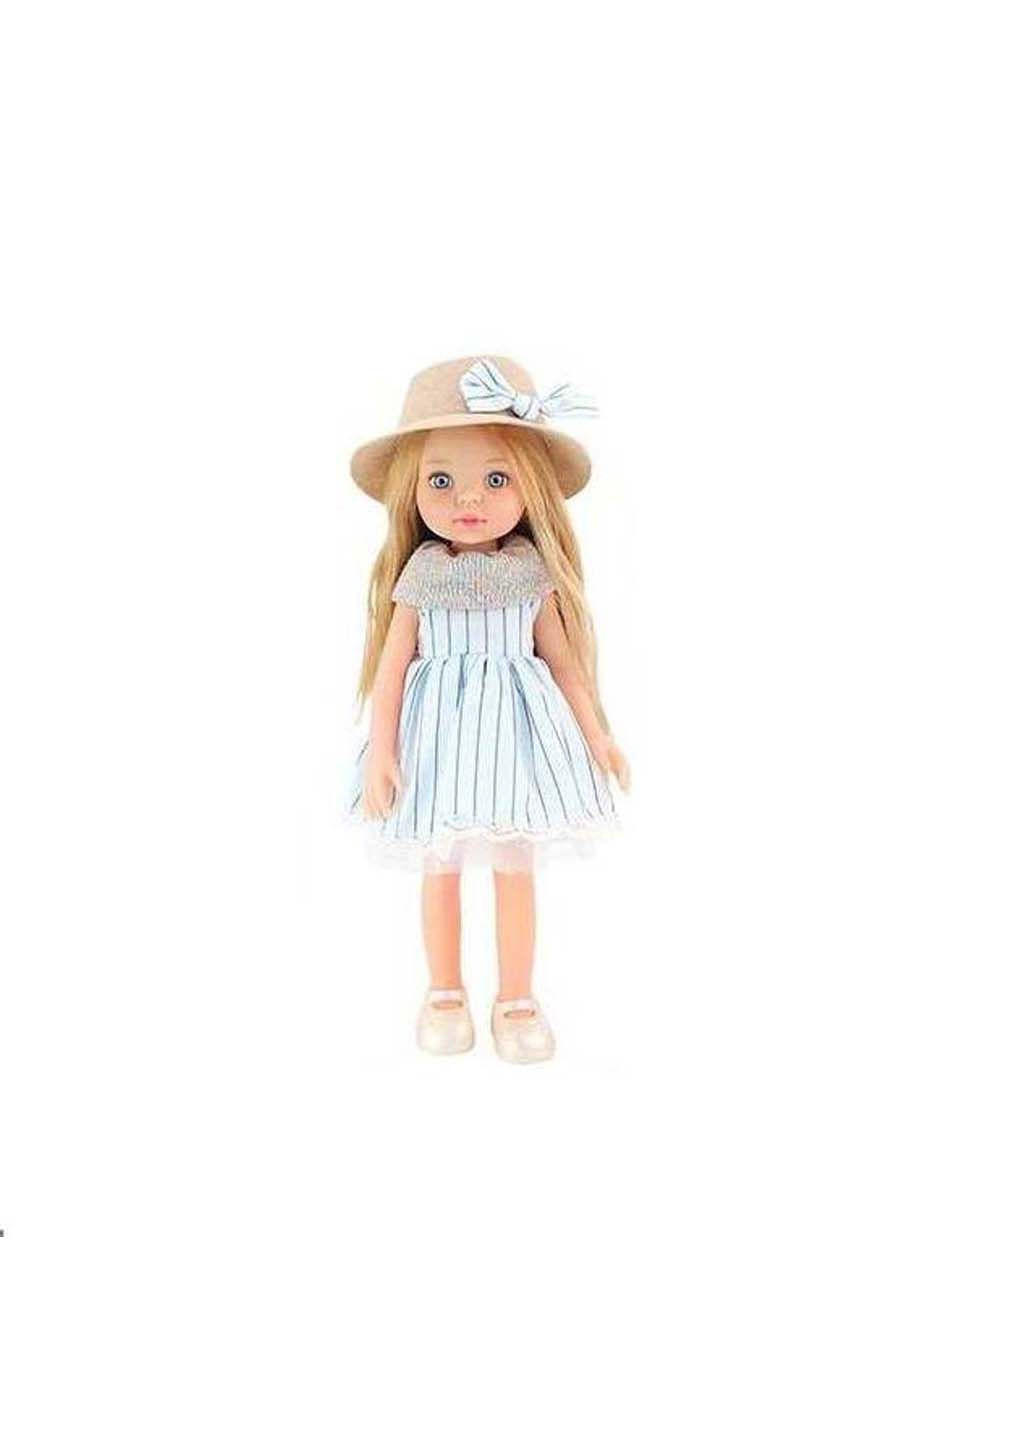 Кукла и дополнительная одежда Little Milly 33 см No Brand (292555936)